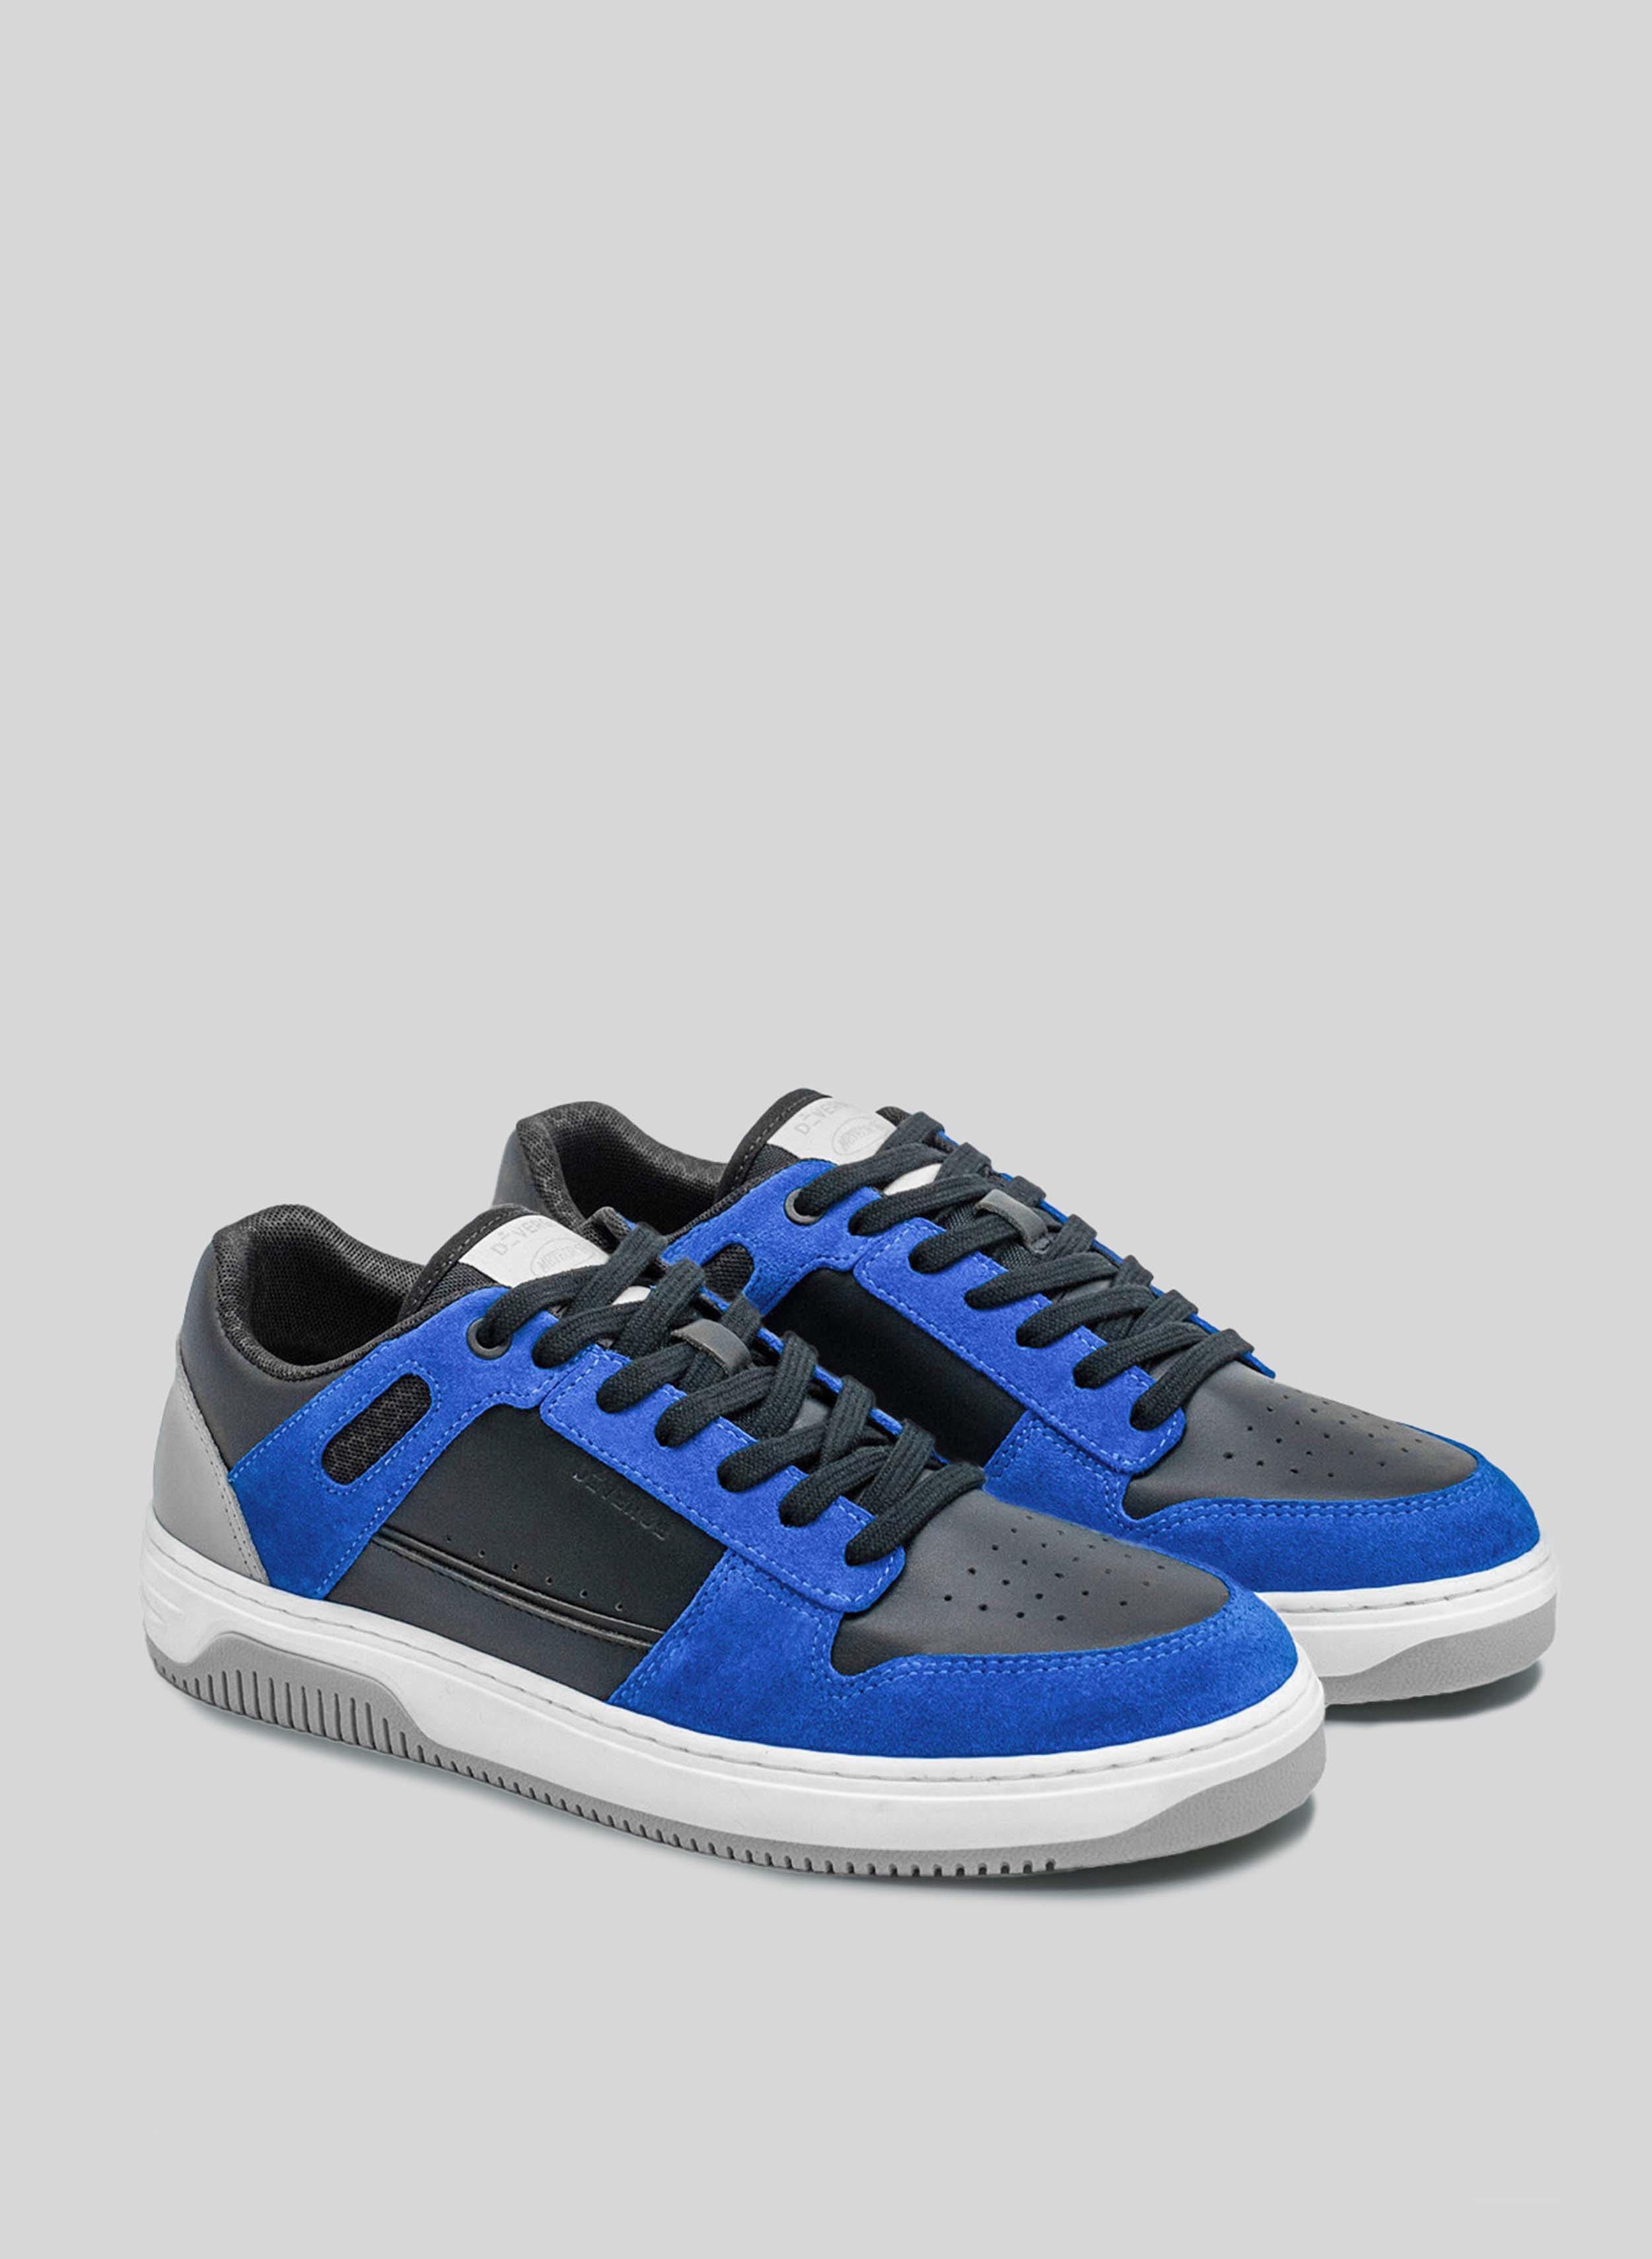 Blaue und schwarze sneakers mit weißer und grauer Sohle von Diverge, die soziale Auswirkungen und maßgeschneiderte Schuhe durch das imagine Projekt fördern. 